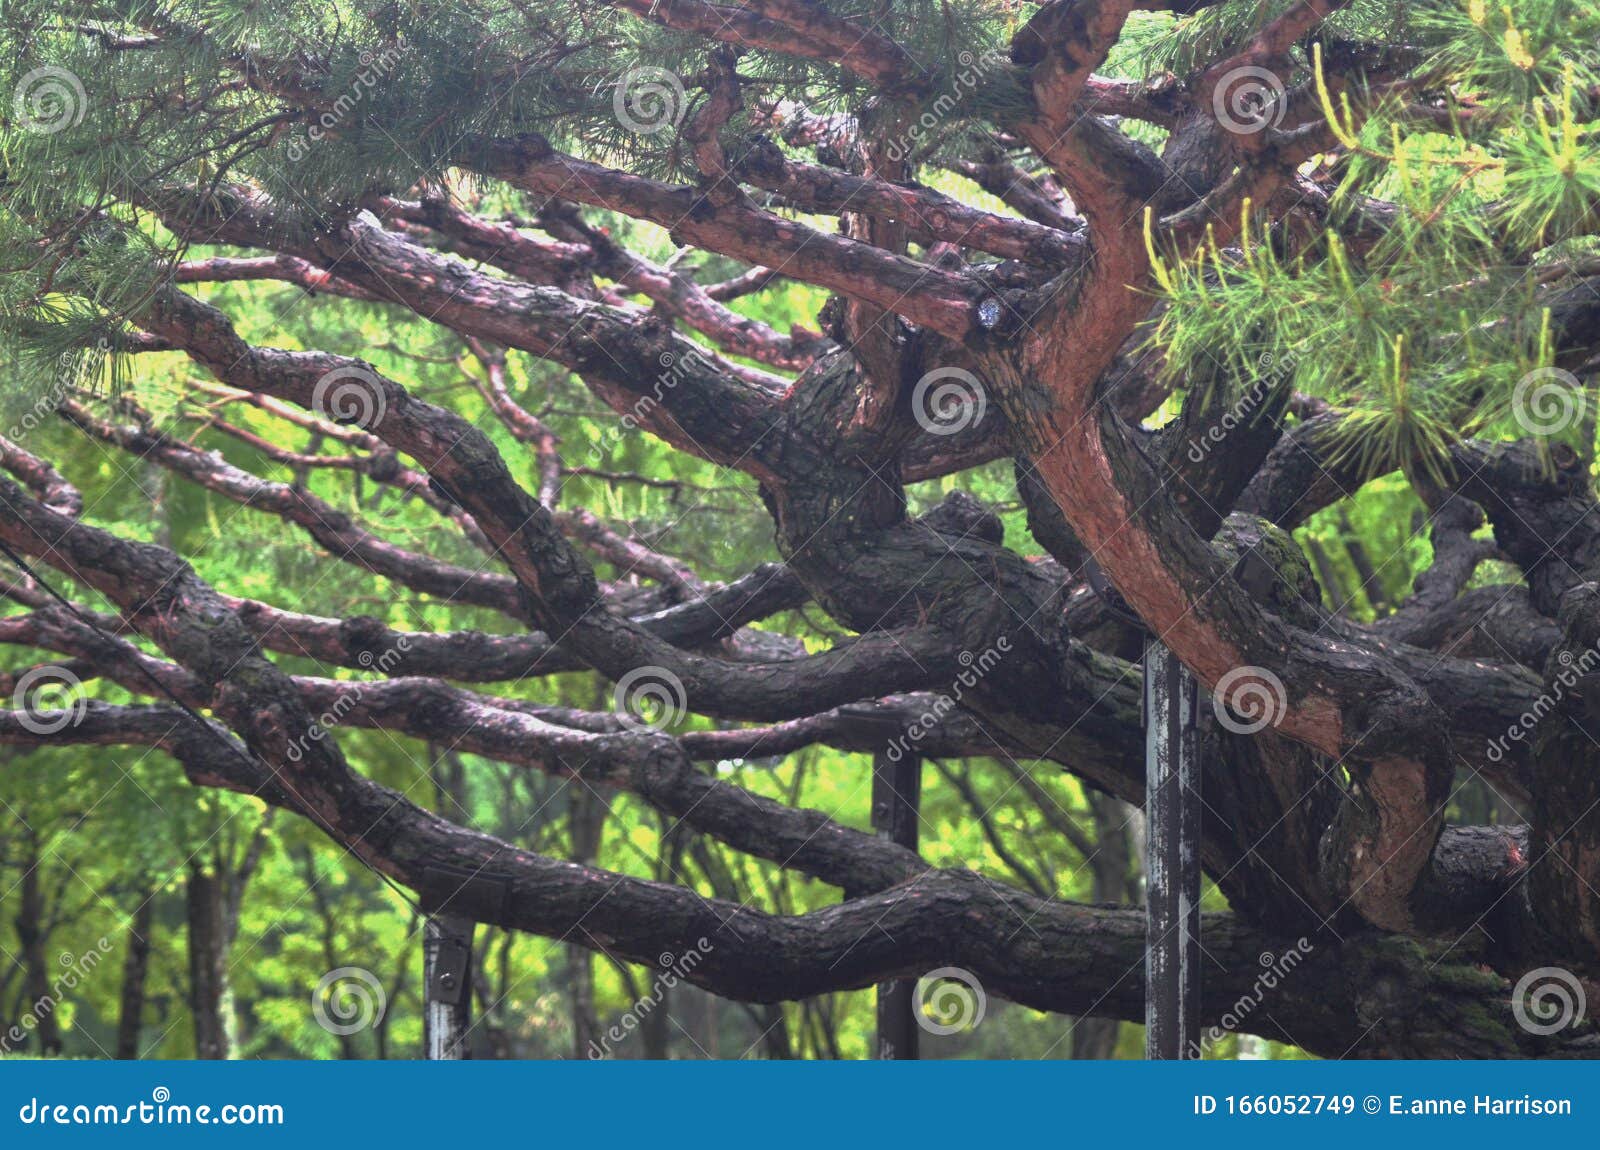 Enkele Verdraaide Takken Van Een Oude Japanse Dennenboom, Ondersteund Door Houten Palen Stock Afbeelding - Image of boom, 166052749